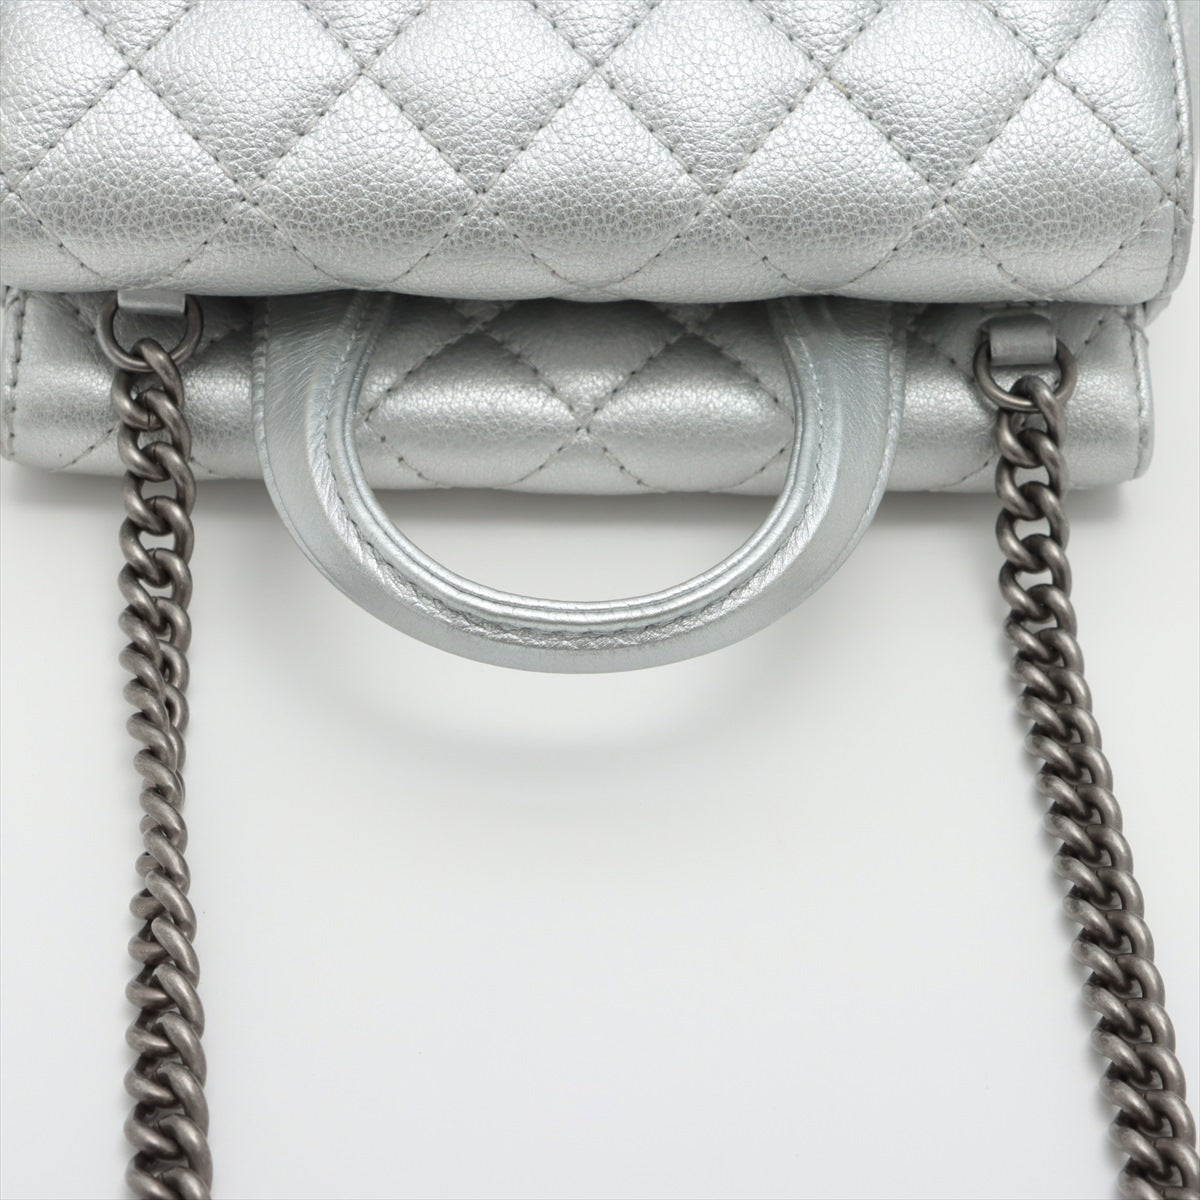 Chanel Matelasse Lambskin 2way handbag Chain shoulder Silver Gunmetallic hardware 22XXXXXX